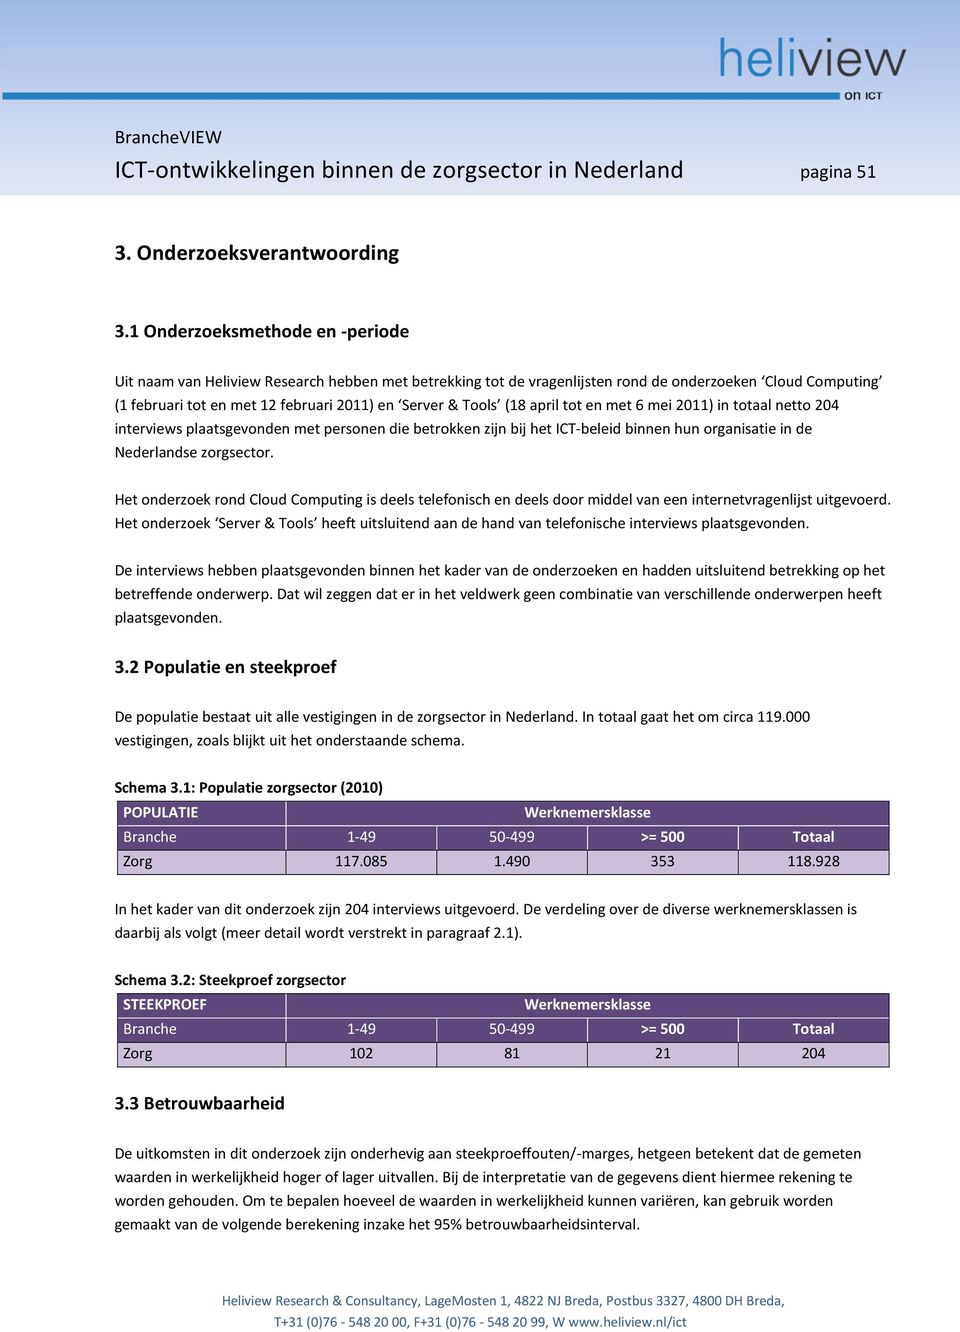 Tools (18 april tot en met 6 mei 2011) in totaal netto 204 interviews plaatsgevonden met personen die betrokken zijn bij het ICT-beleid binnen hun organisatie in de Nederlandse zorgsector.